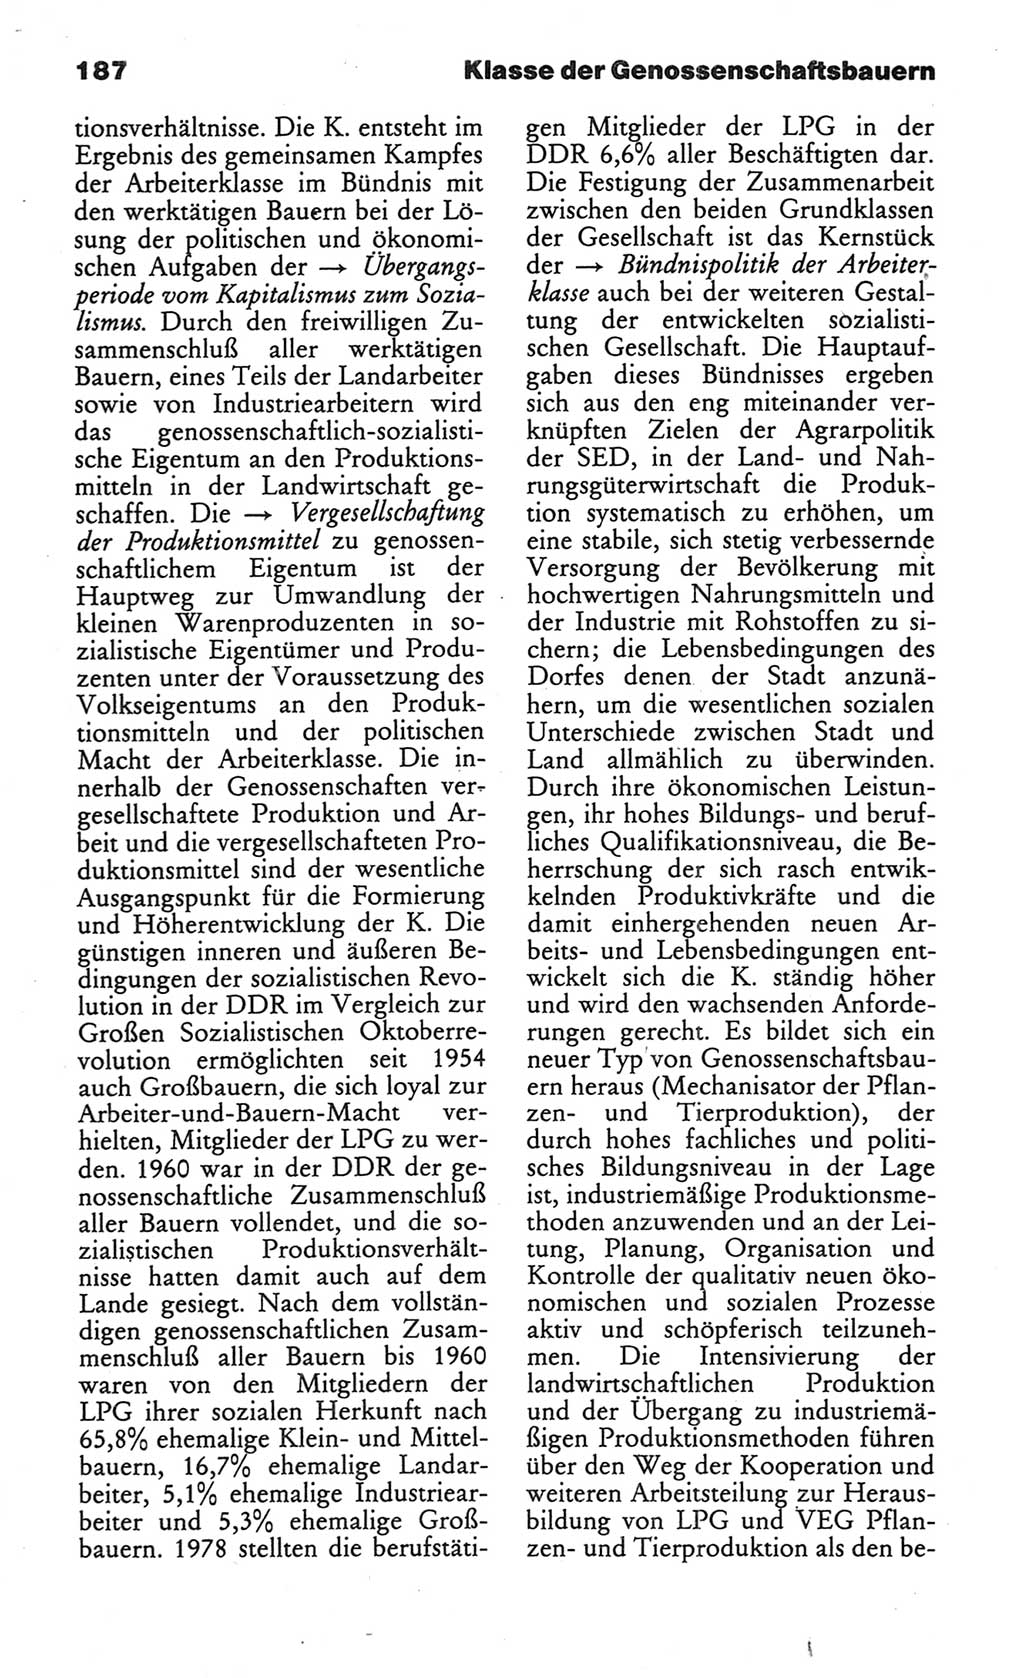 Wörterbuch des wissenschaftlichen Kommunismus [Deutsche Demokratische Republik (DDR)] 1984, Seite 187 (Wb. wiss. Komm. DDR 1984, S. 187)